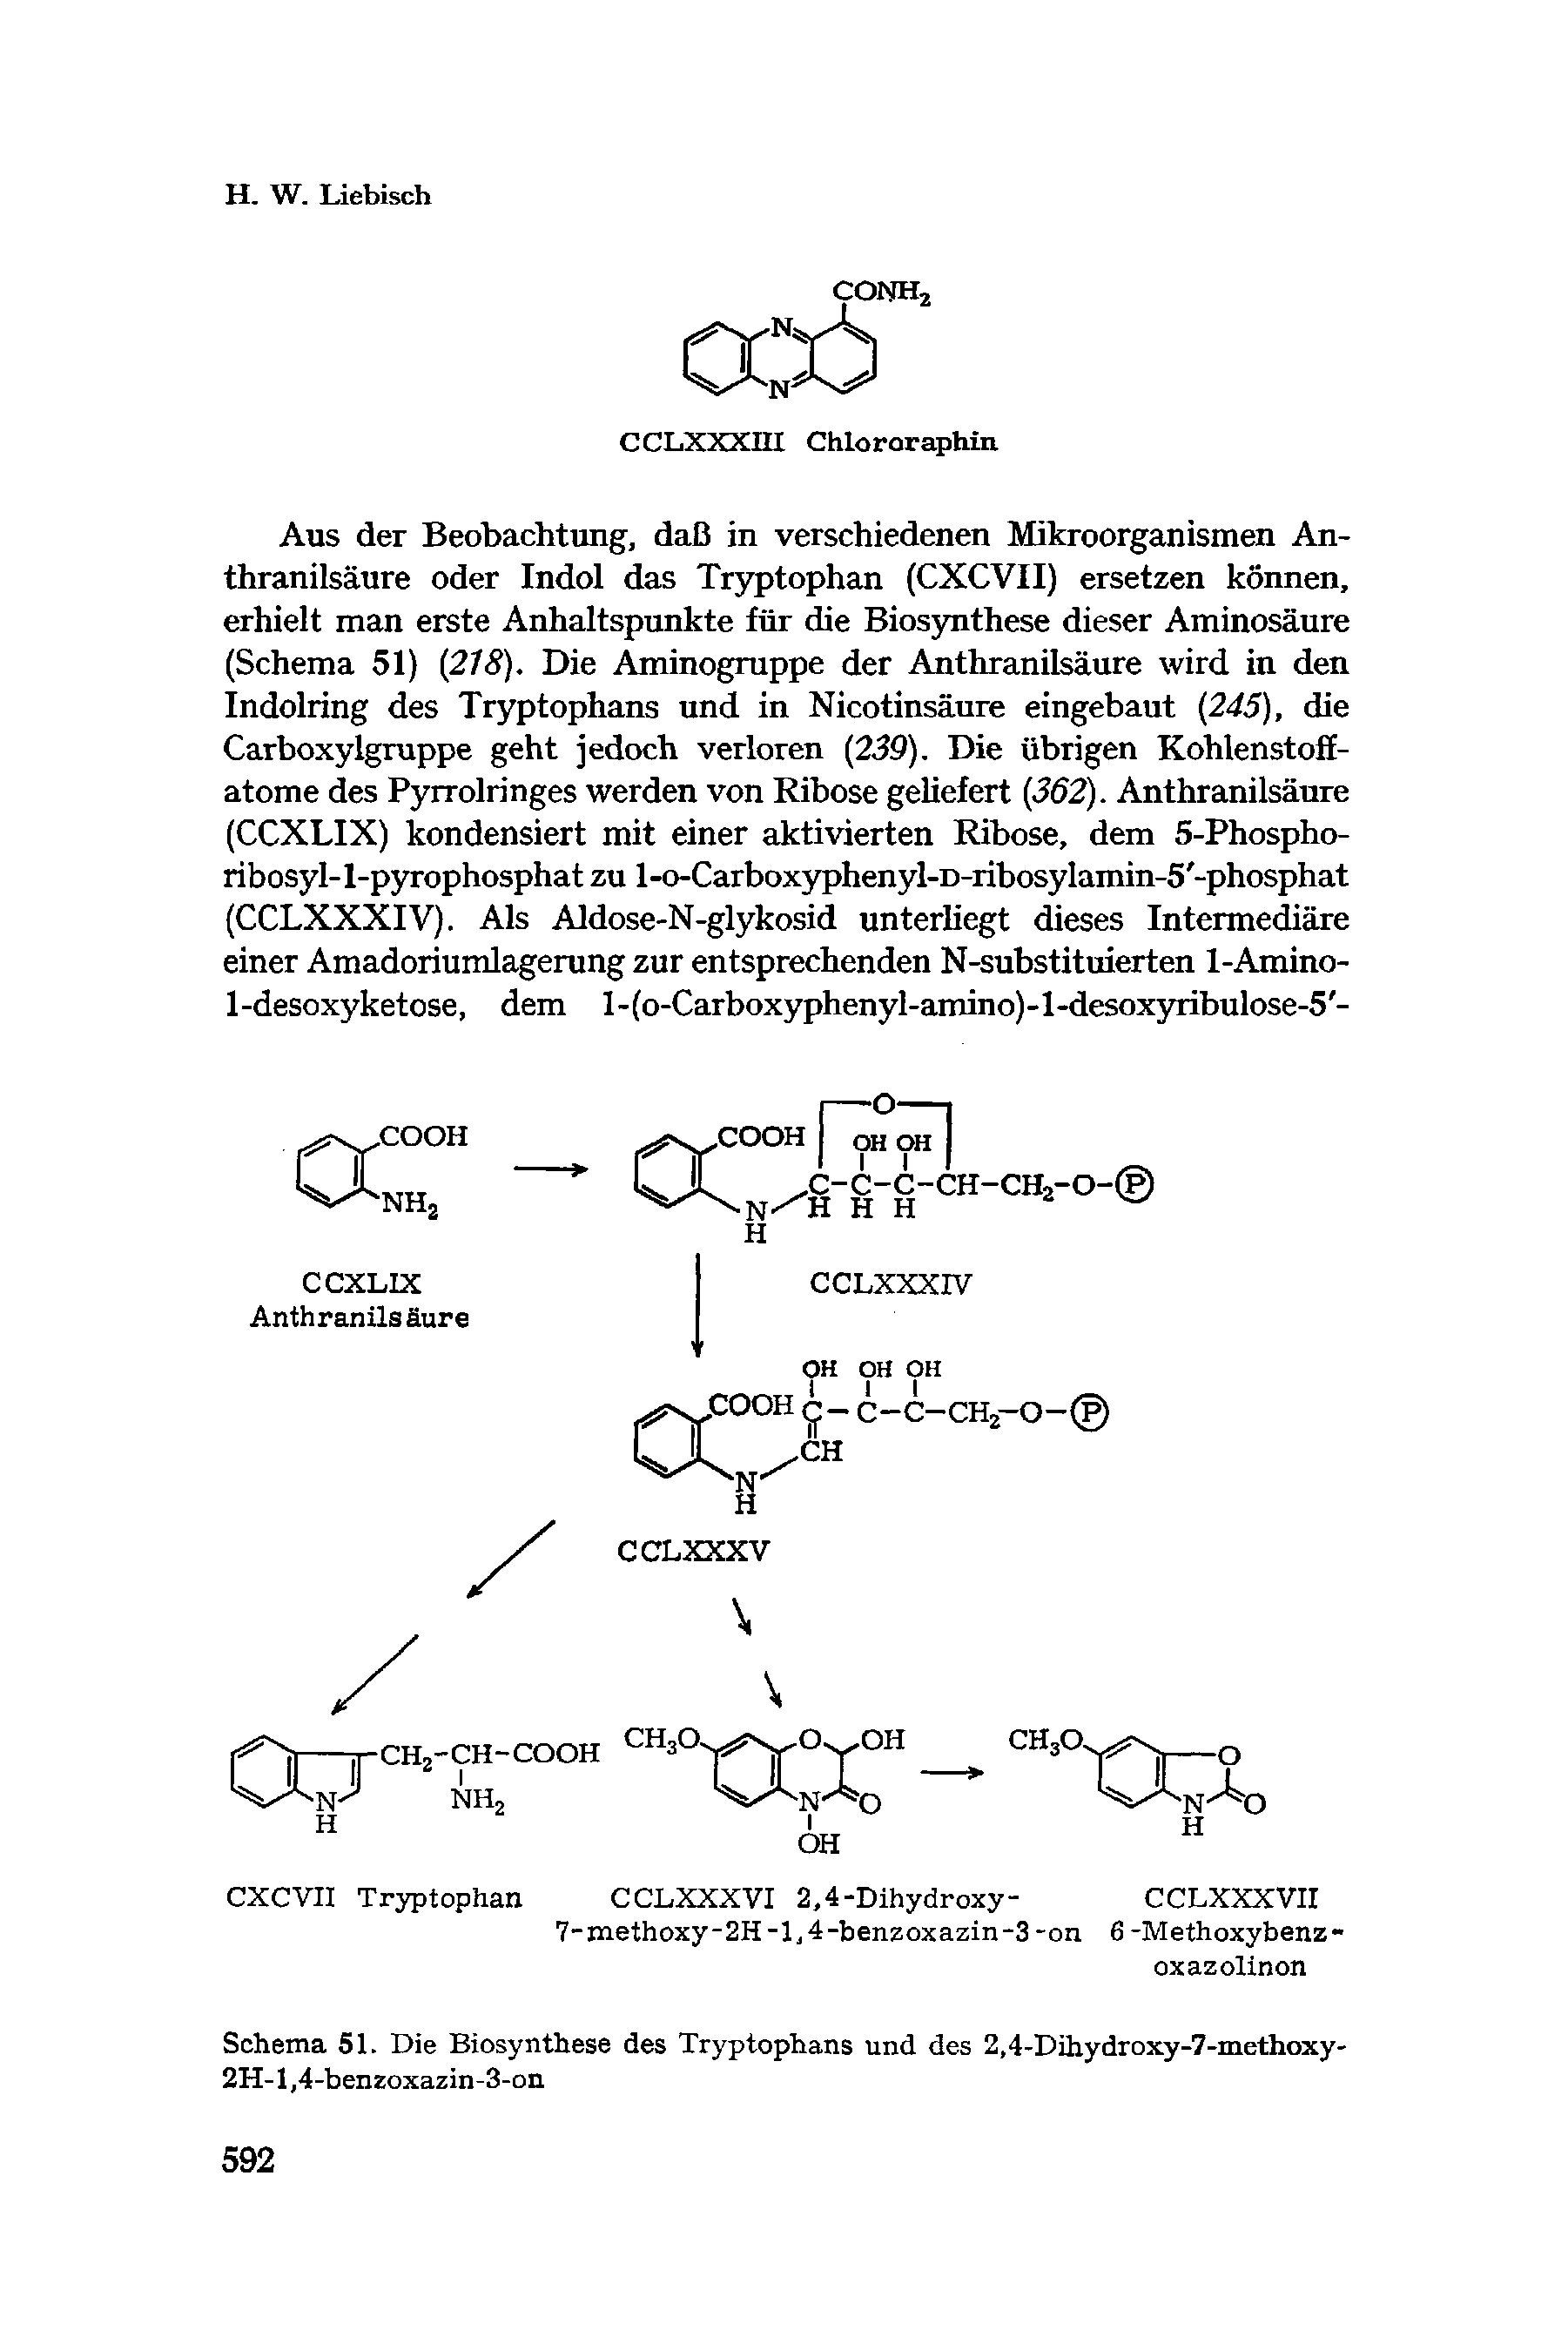 Schema 51. Die Biosynthese des Tryptophans und des 2,4-Dihydroxy-7-methoxy-2H-1,4-benzoxazin-3-on...